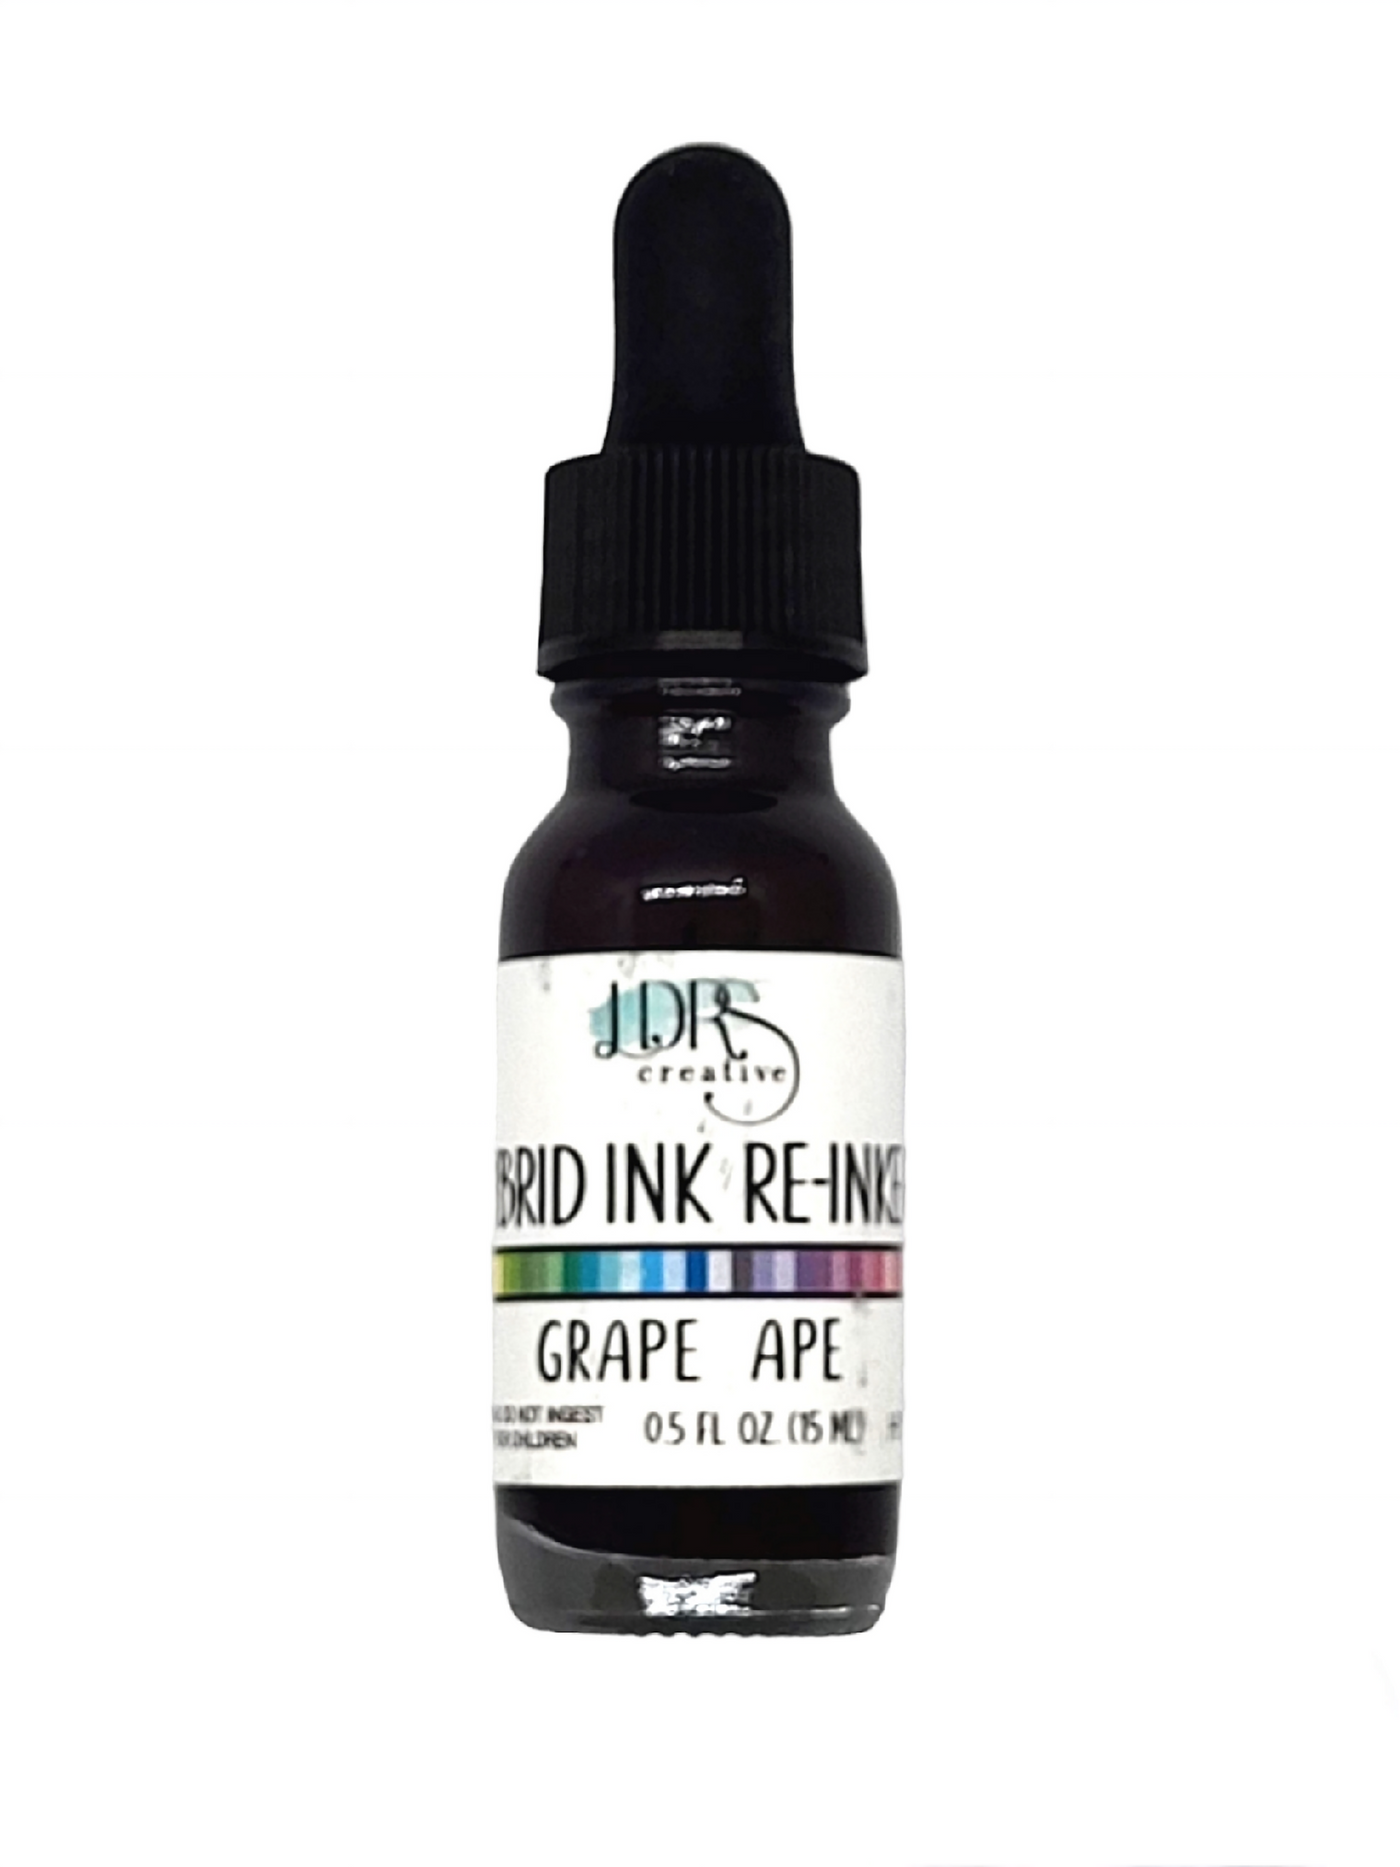 Grape Ape Hybrid Ink Re-Inker